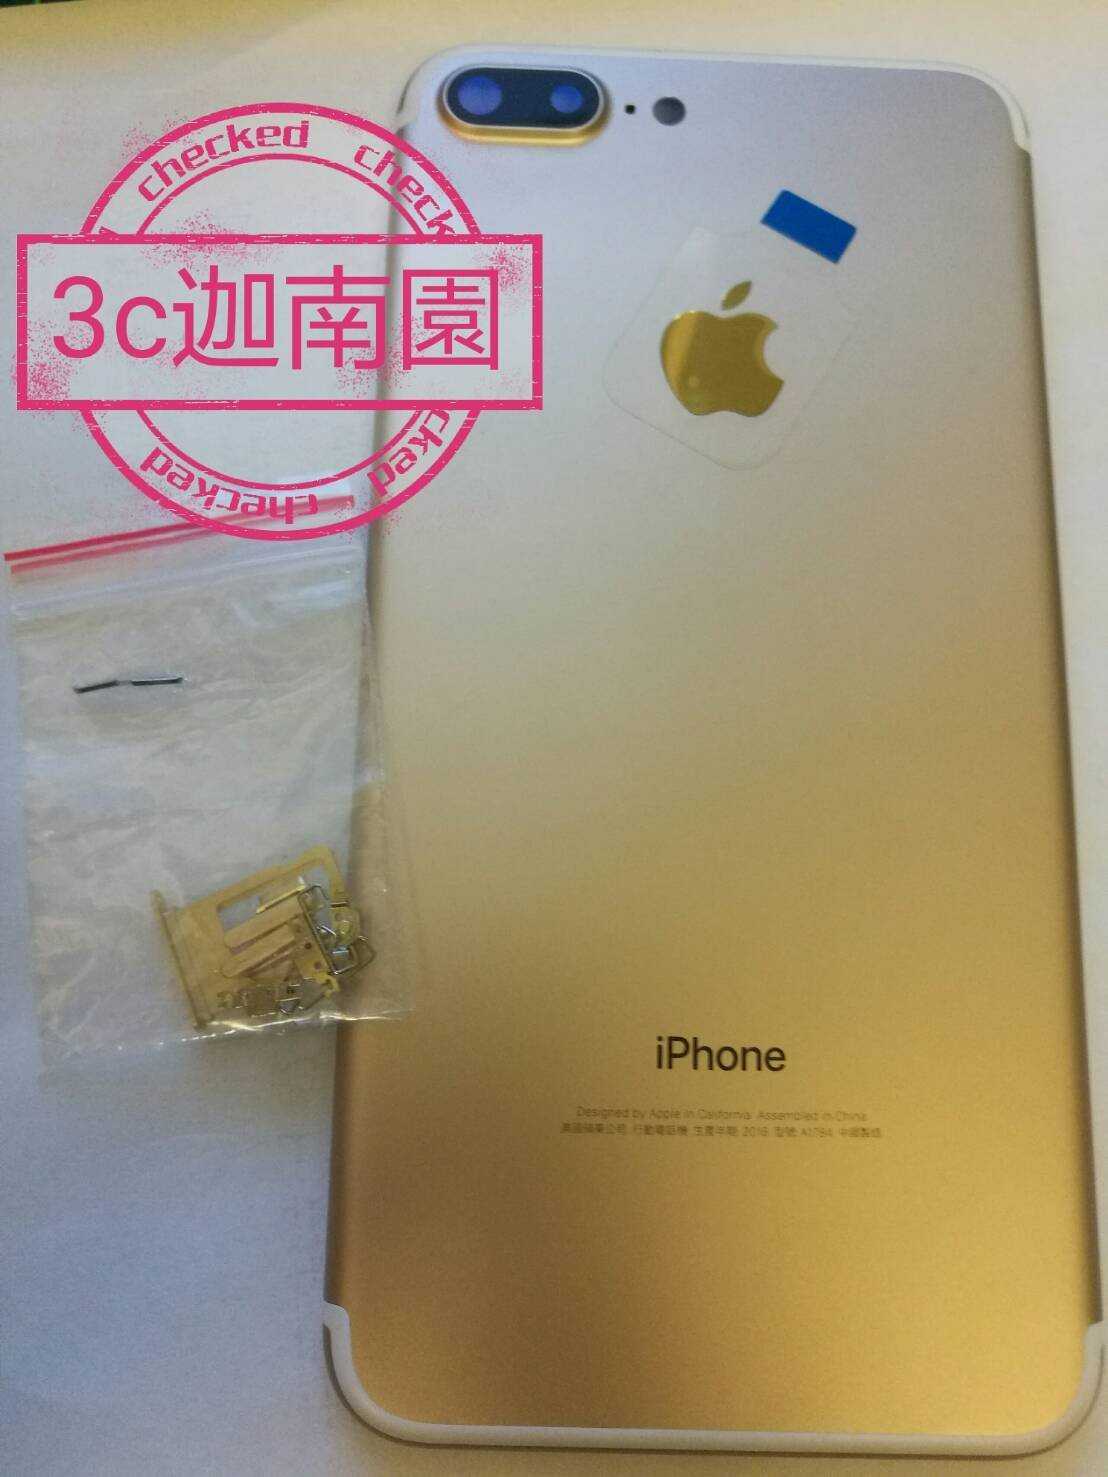 【原廠背蓋】Apple iphone 7 PLUS 原廠背蓋 背殼 手機殼 贈手工具 (含側按鍵) - 金色